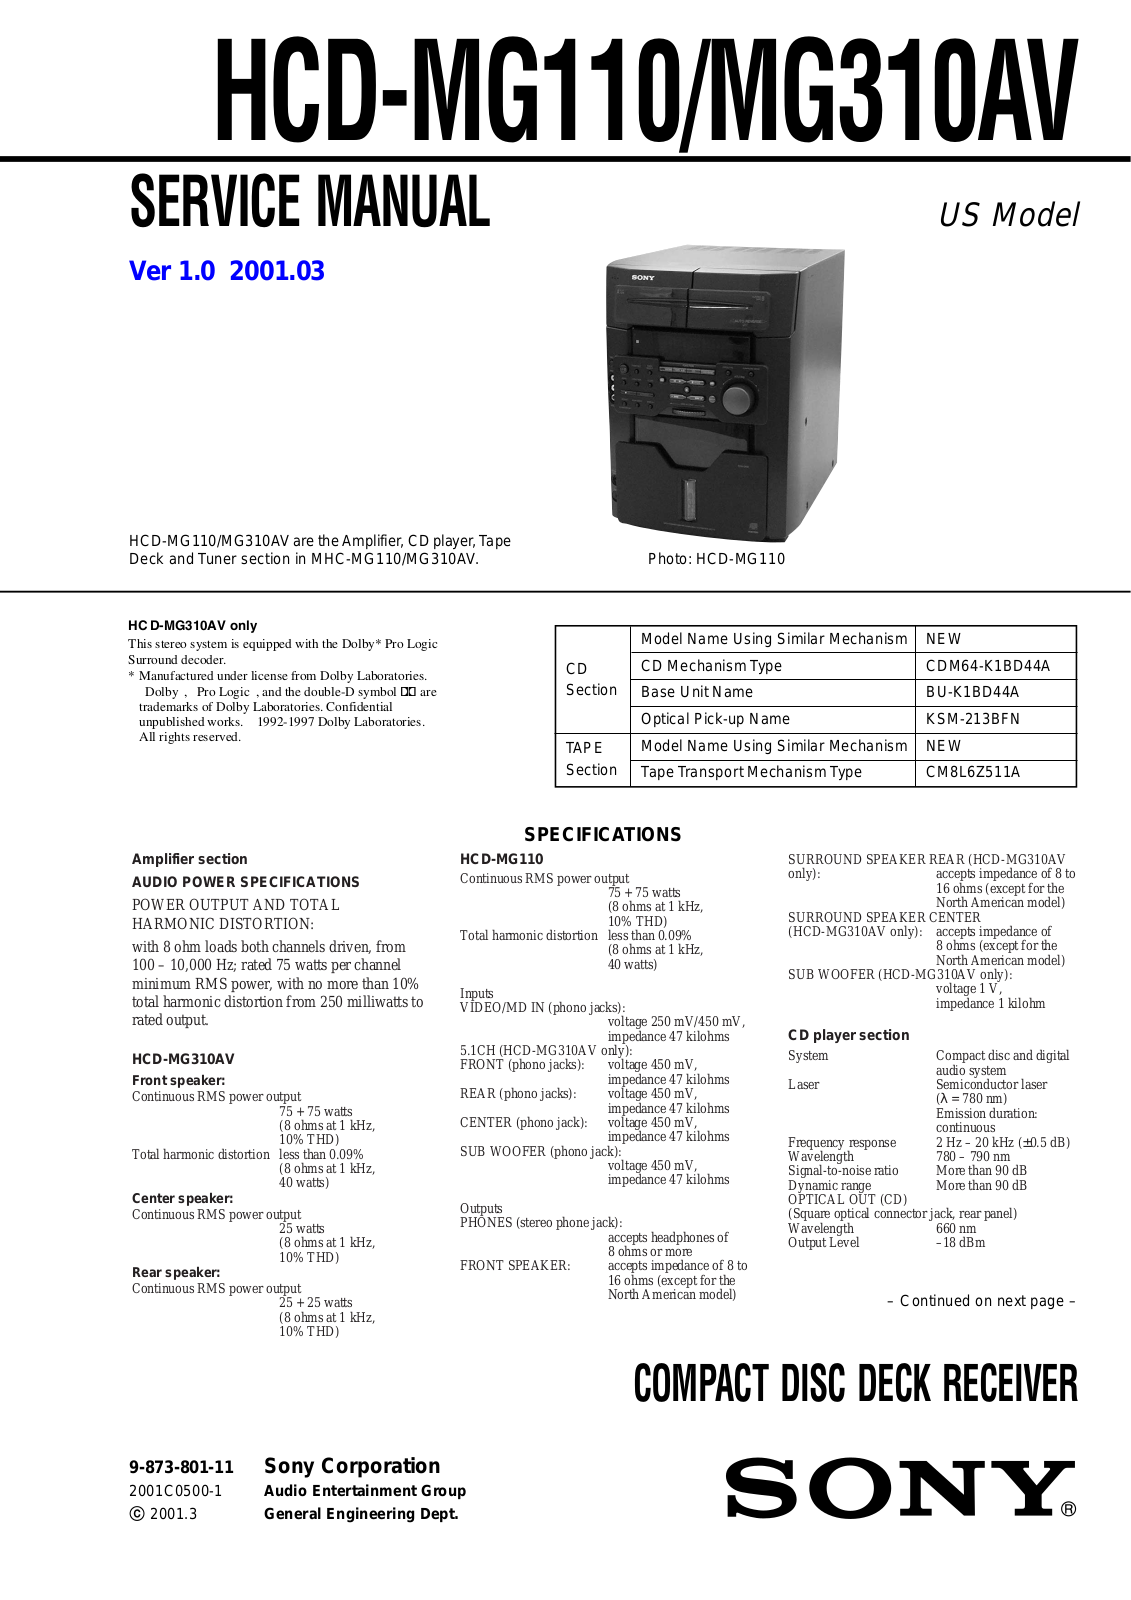 Sony HCD-MG110, HCD-MG310AV Service manual